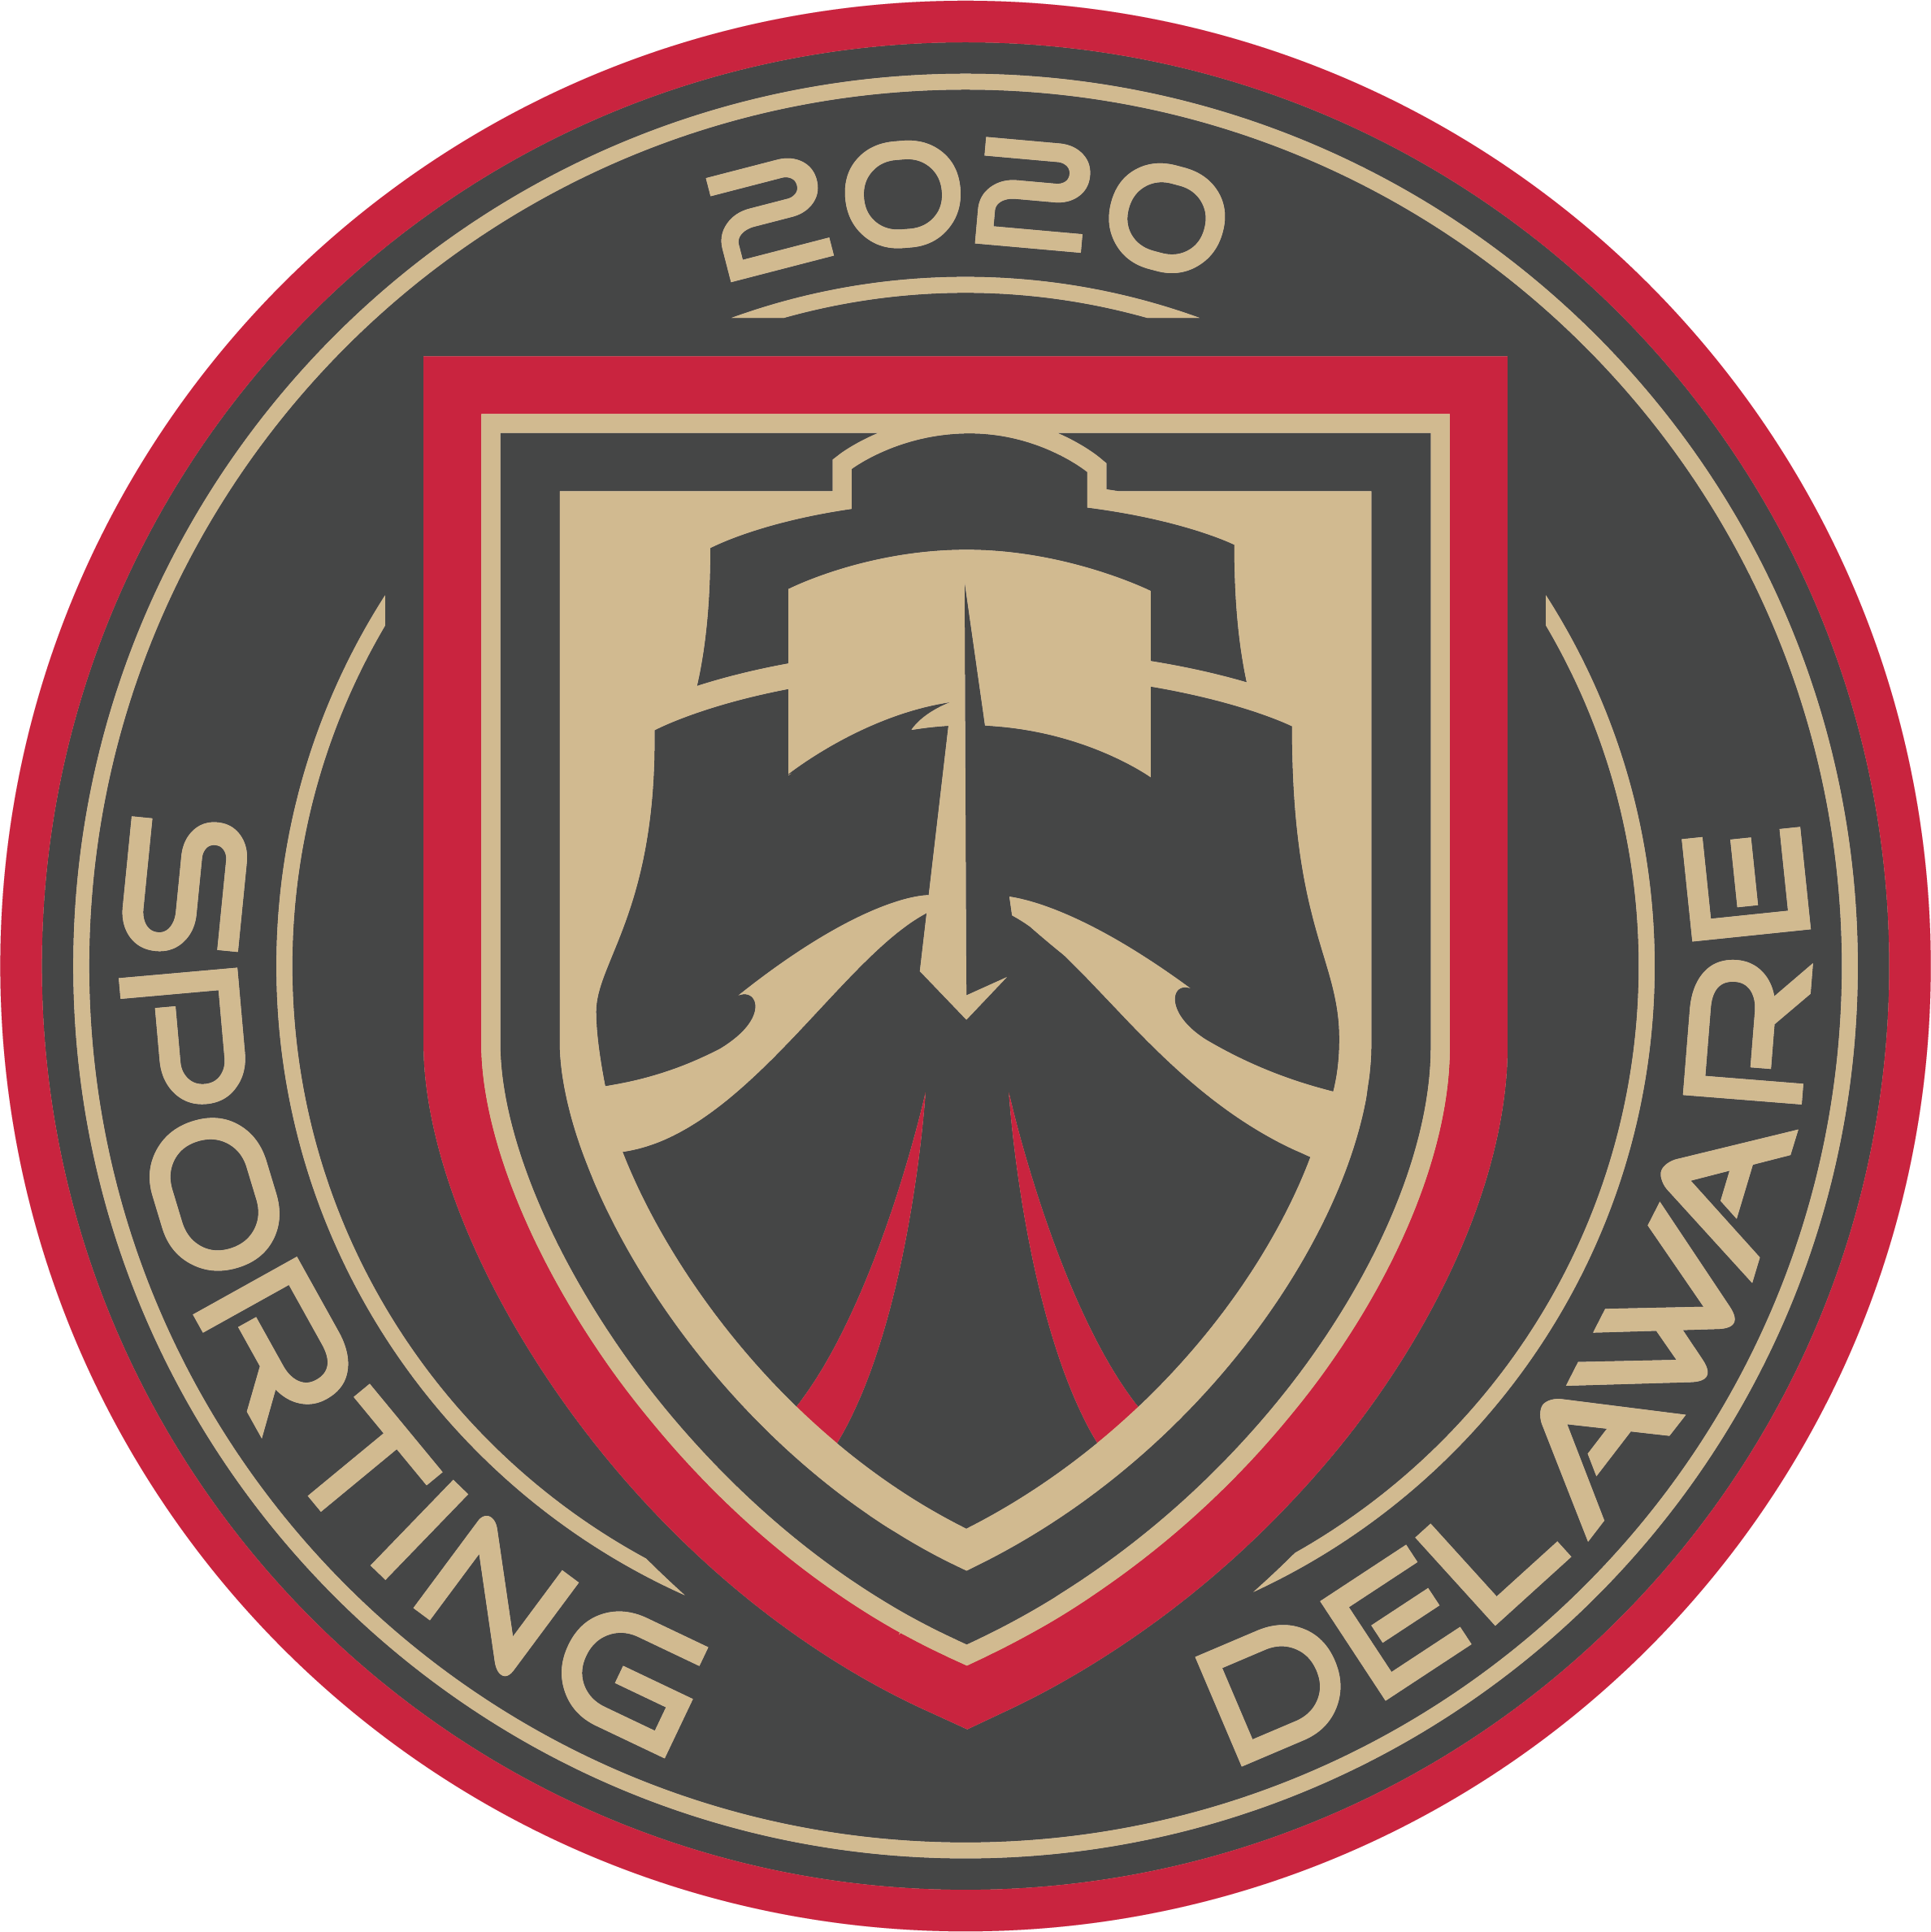 Sporting Delaware team badge